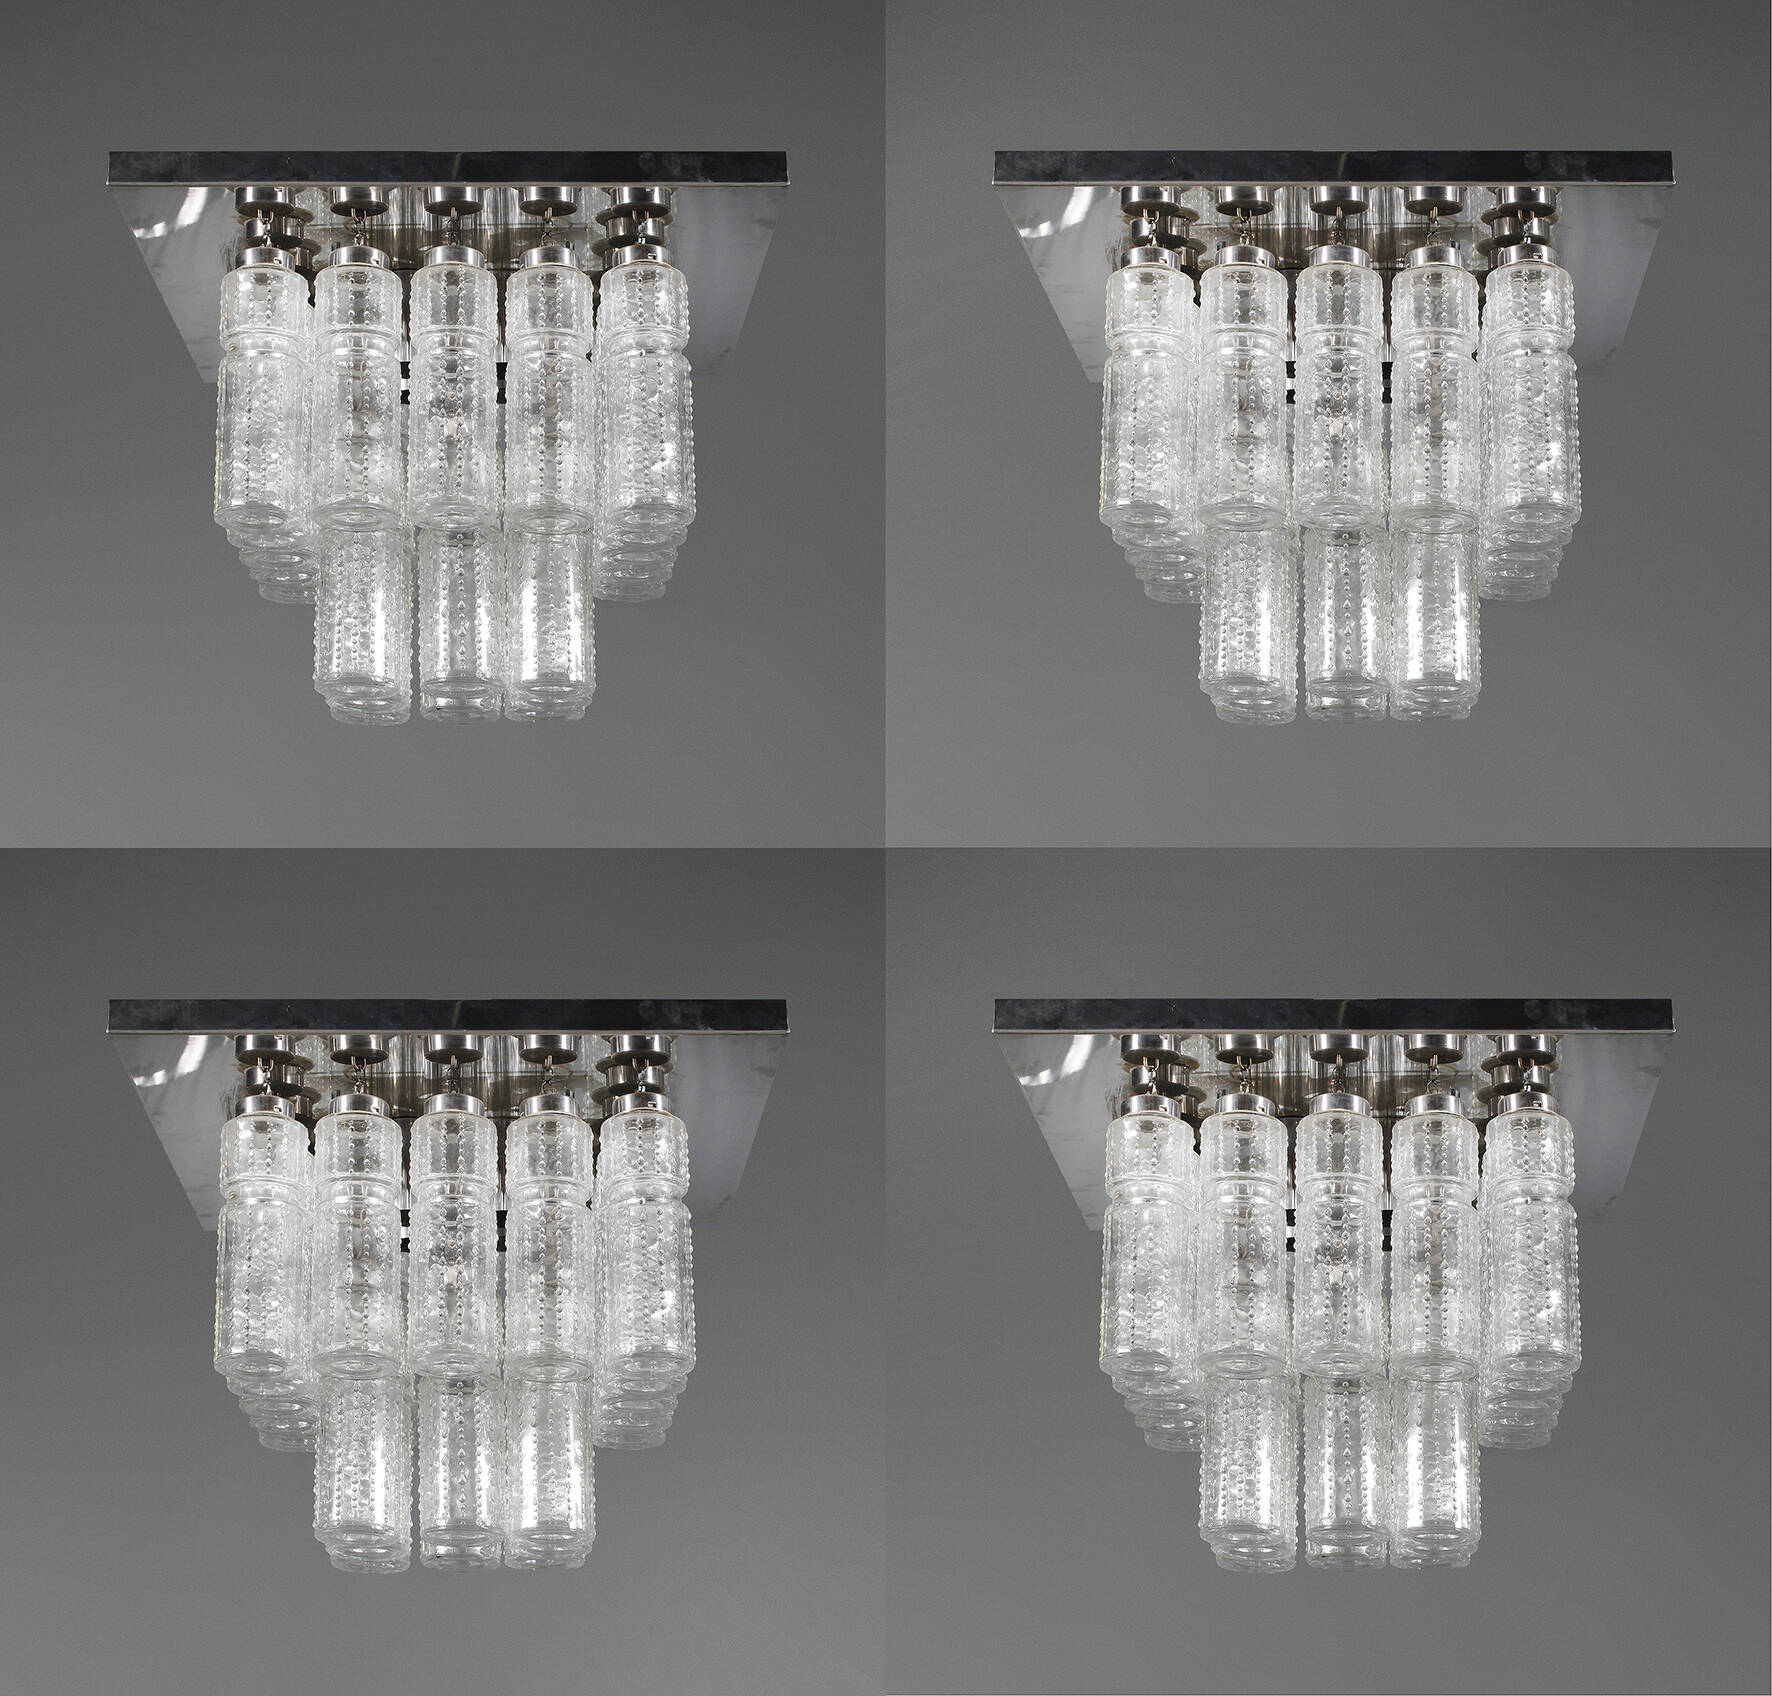 Vier Deckenlampen Design